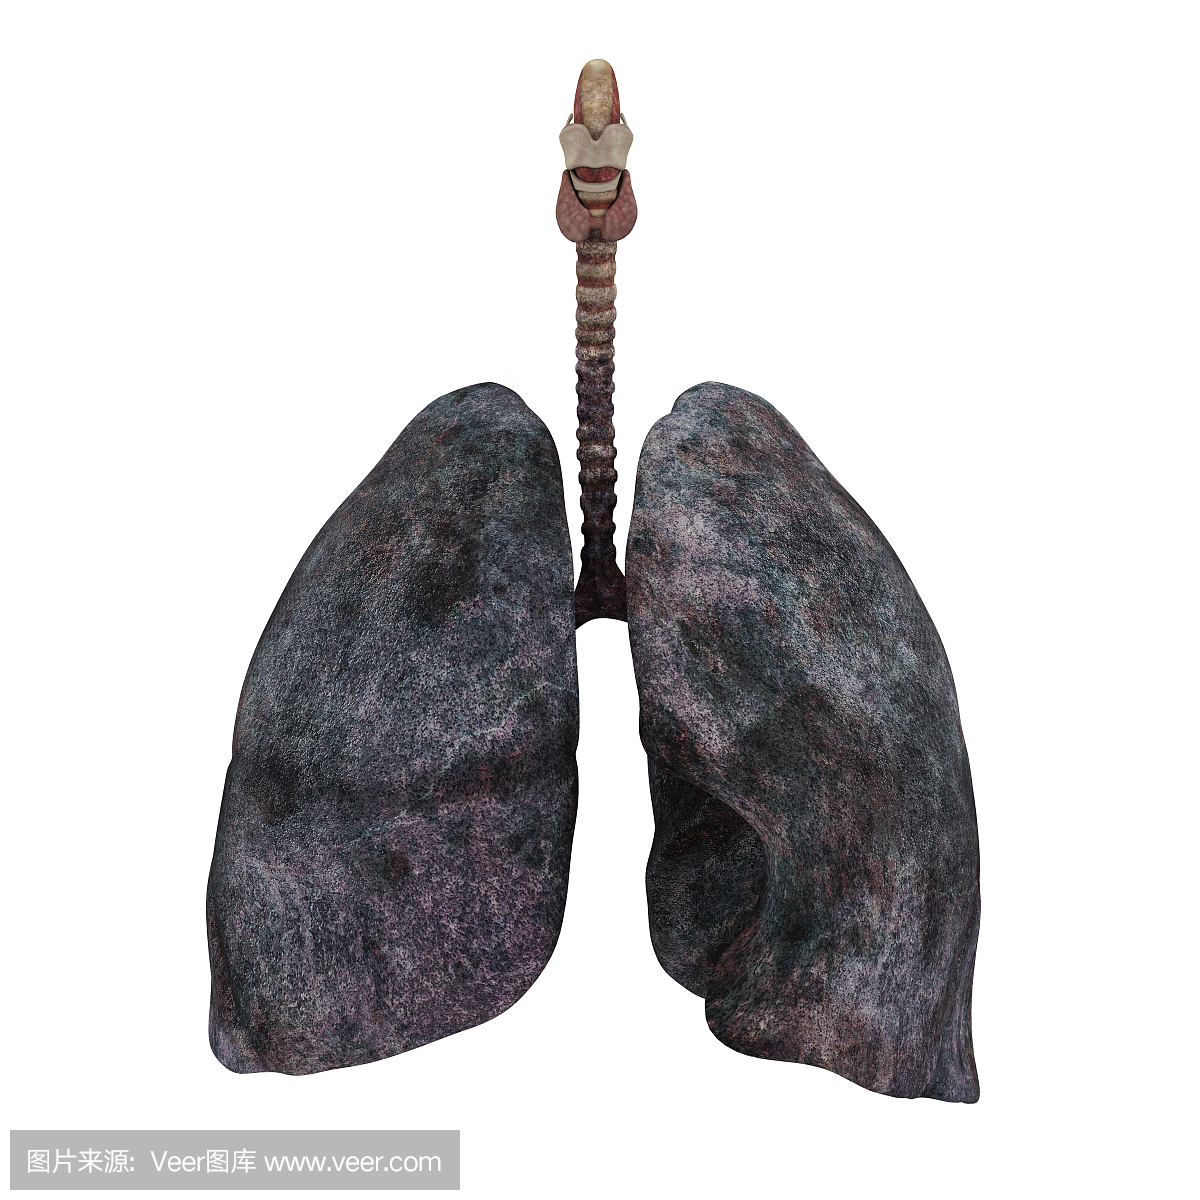 世界無煙日男人抽着煙拿着肺的病歷手繪插畫背景圖案素材，桌布圖片免費下載 -zh.lovepik.com